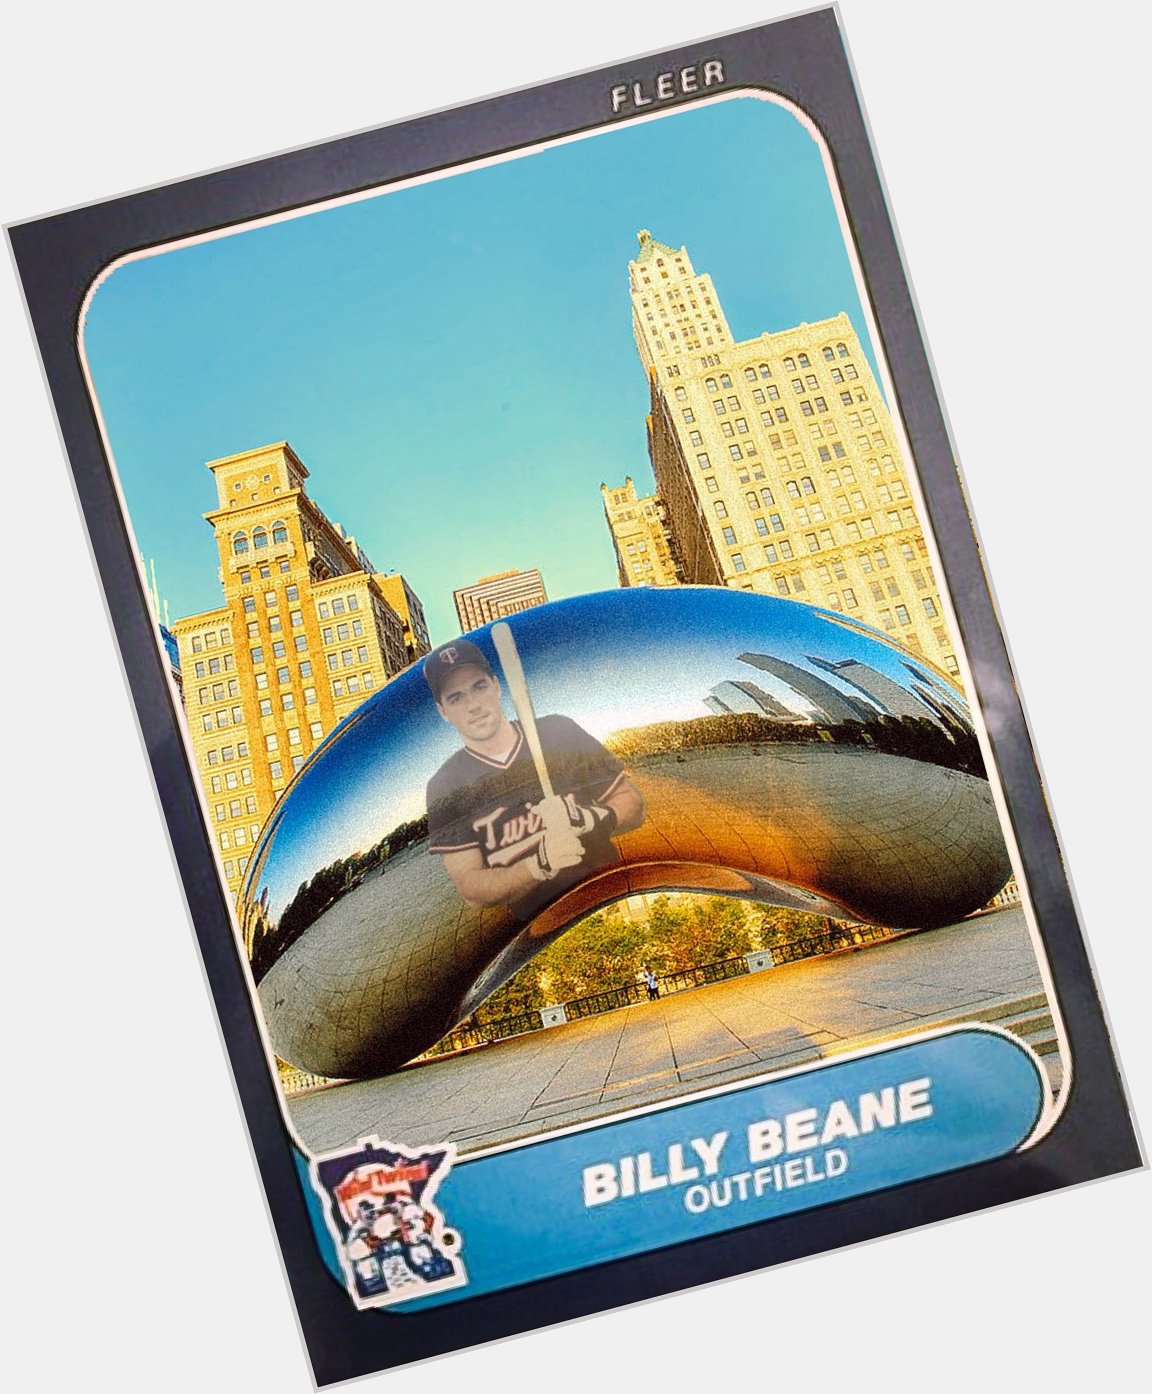 Happy birthday Billy Beane! 